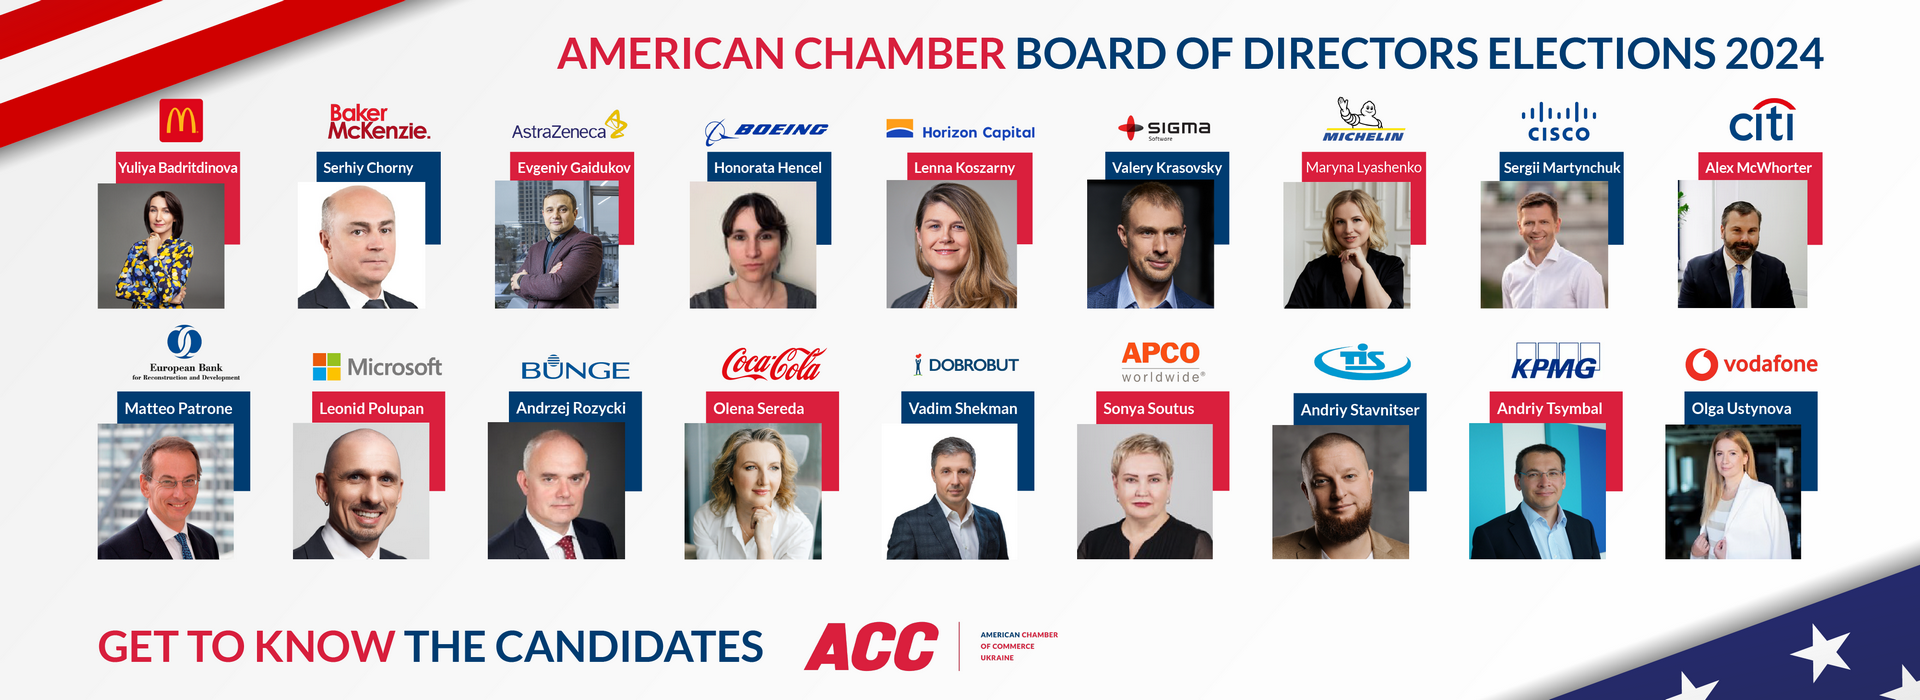 AmCham Ukraine Board of Directors Elections 2024: Voting Is Now Open